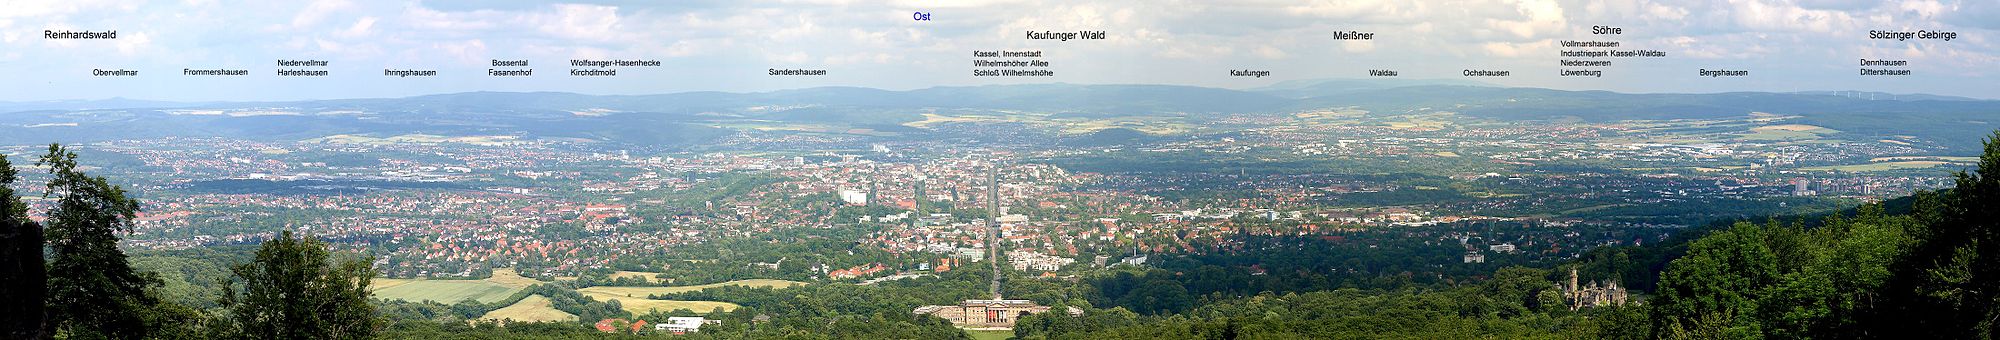 Beschriftetes Panorama von Kassel, aufgenommen vom Herkules